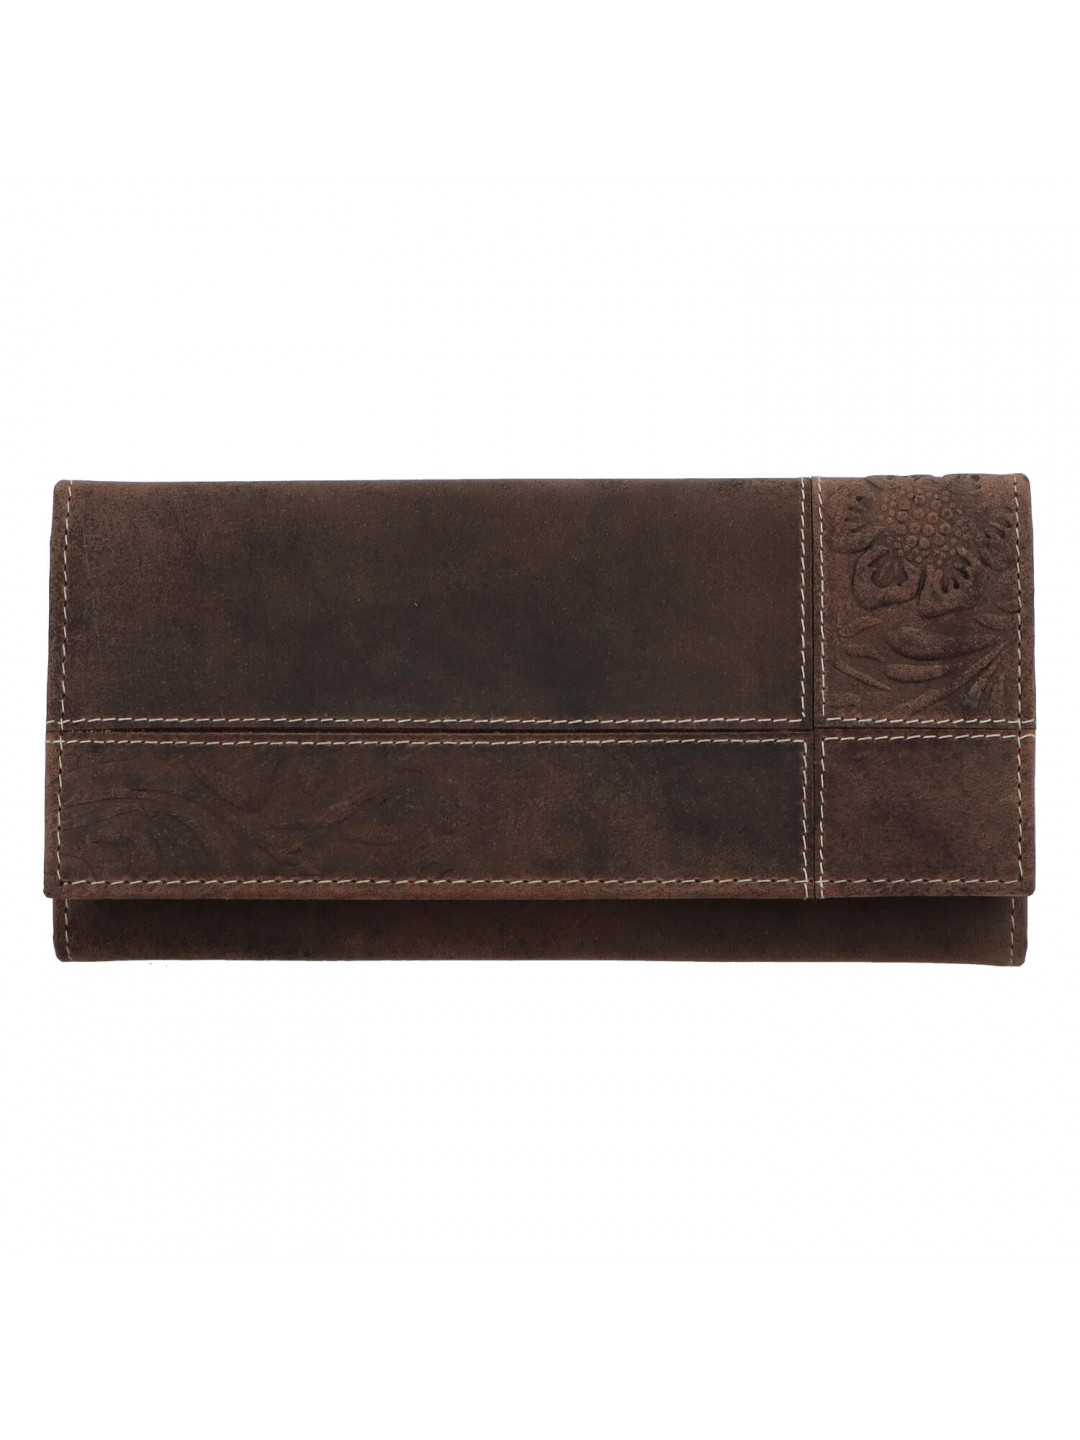 Dámská kožená peněženka hnědá broušená se vzorem – Tomas Farbe